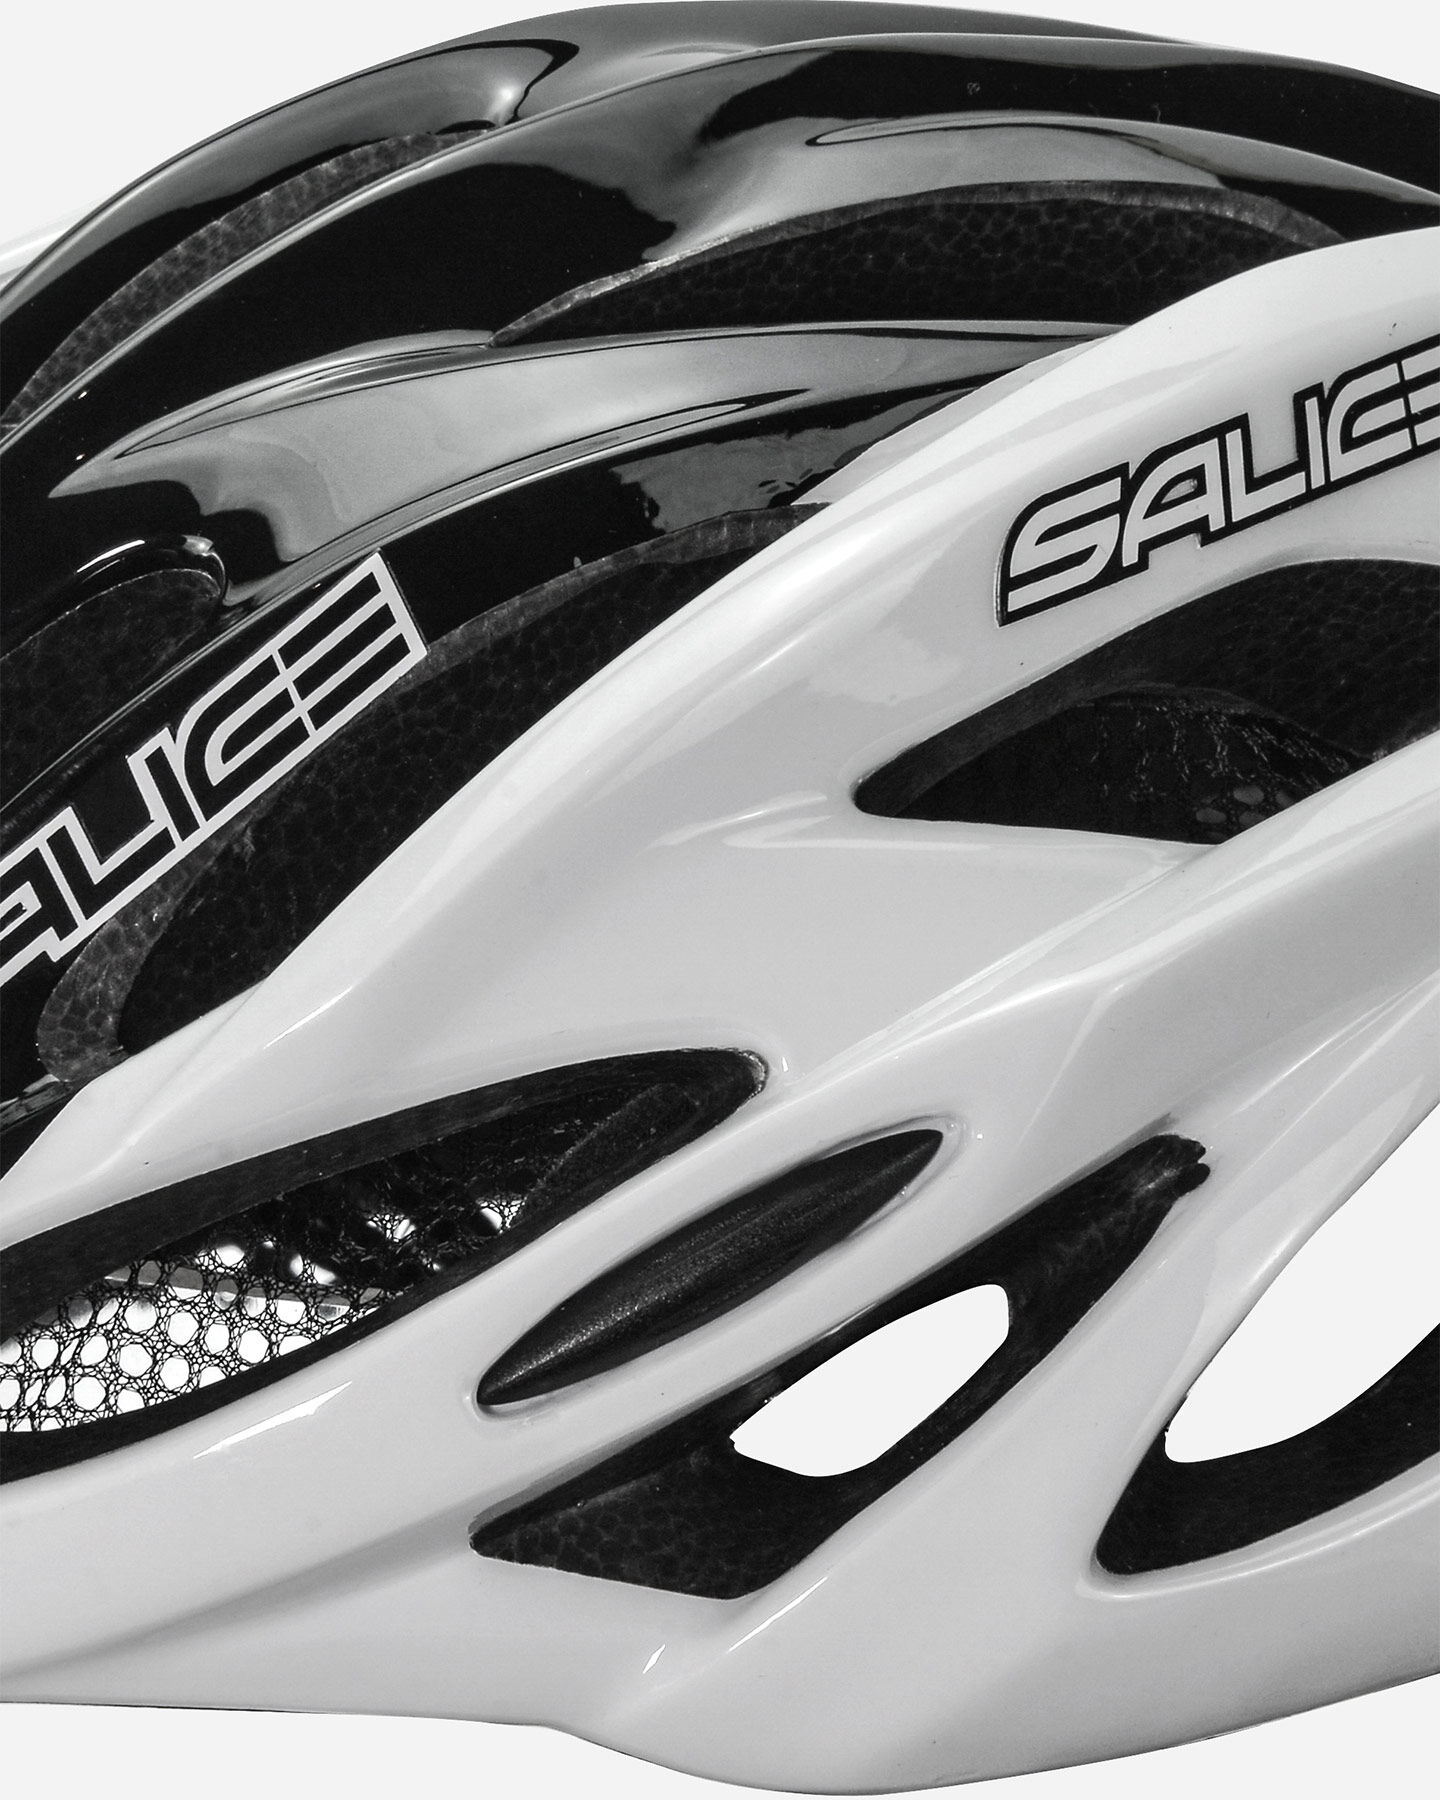  Casco bici SALICE GHIBLI S4091227|1|XL scatto 1